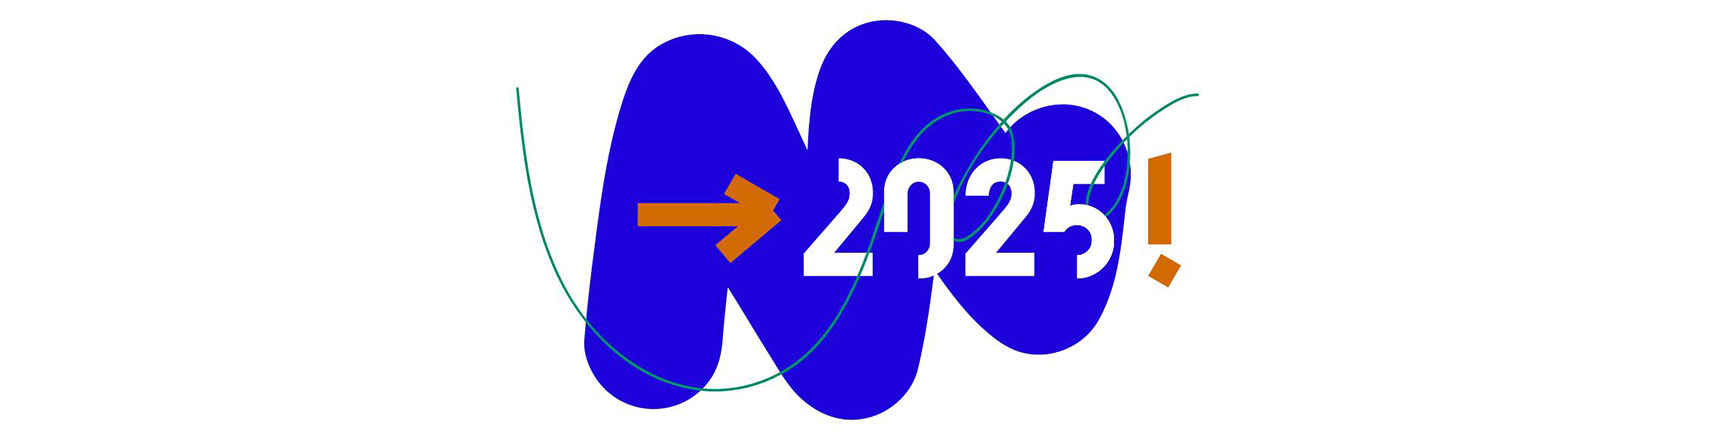 Ateliers Médicis 2025 – acte I : écrivons le futur !